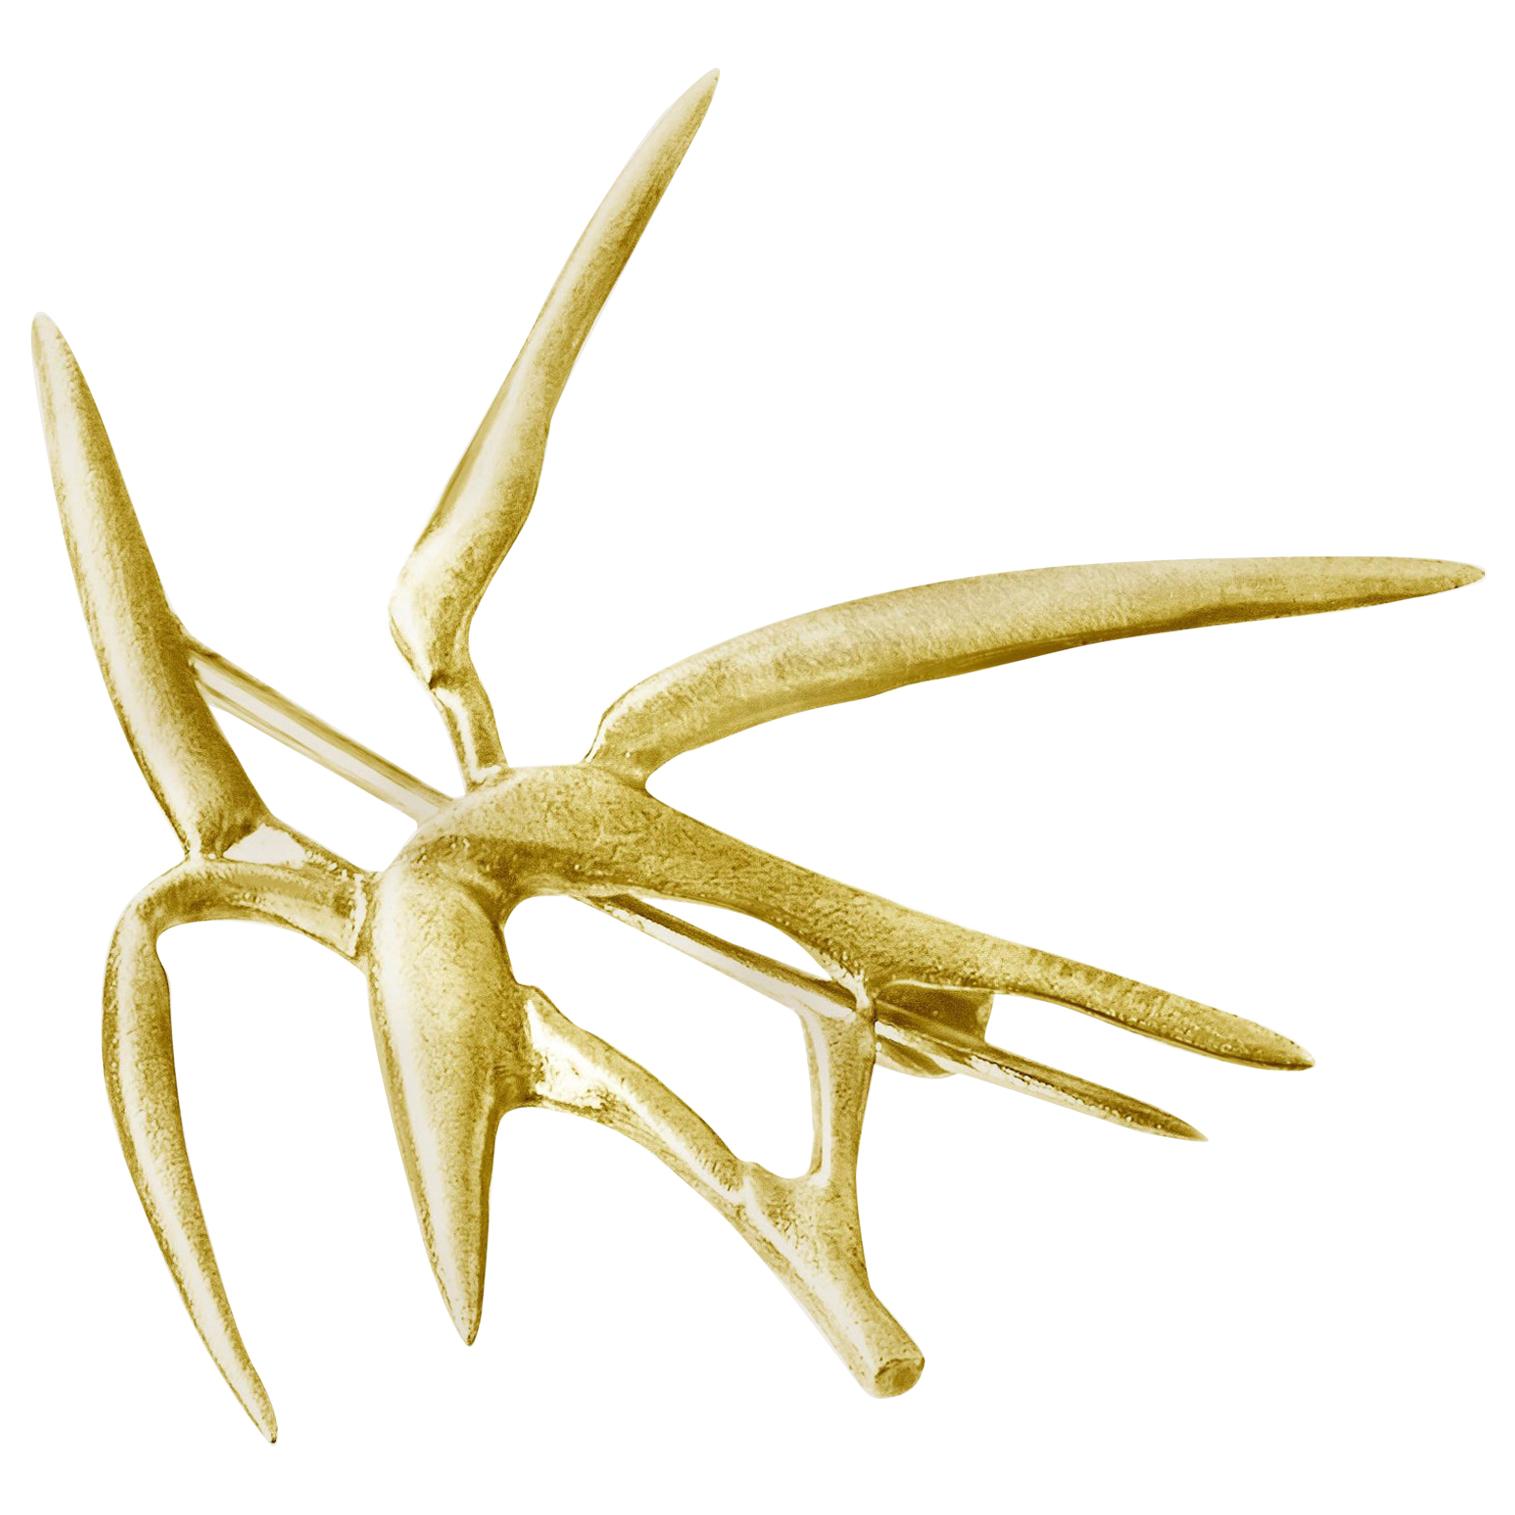 Bambusbrosche aus vierzehn Karat Gelbgold des Künstlers